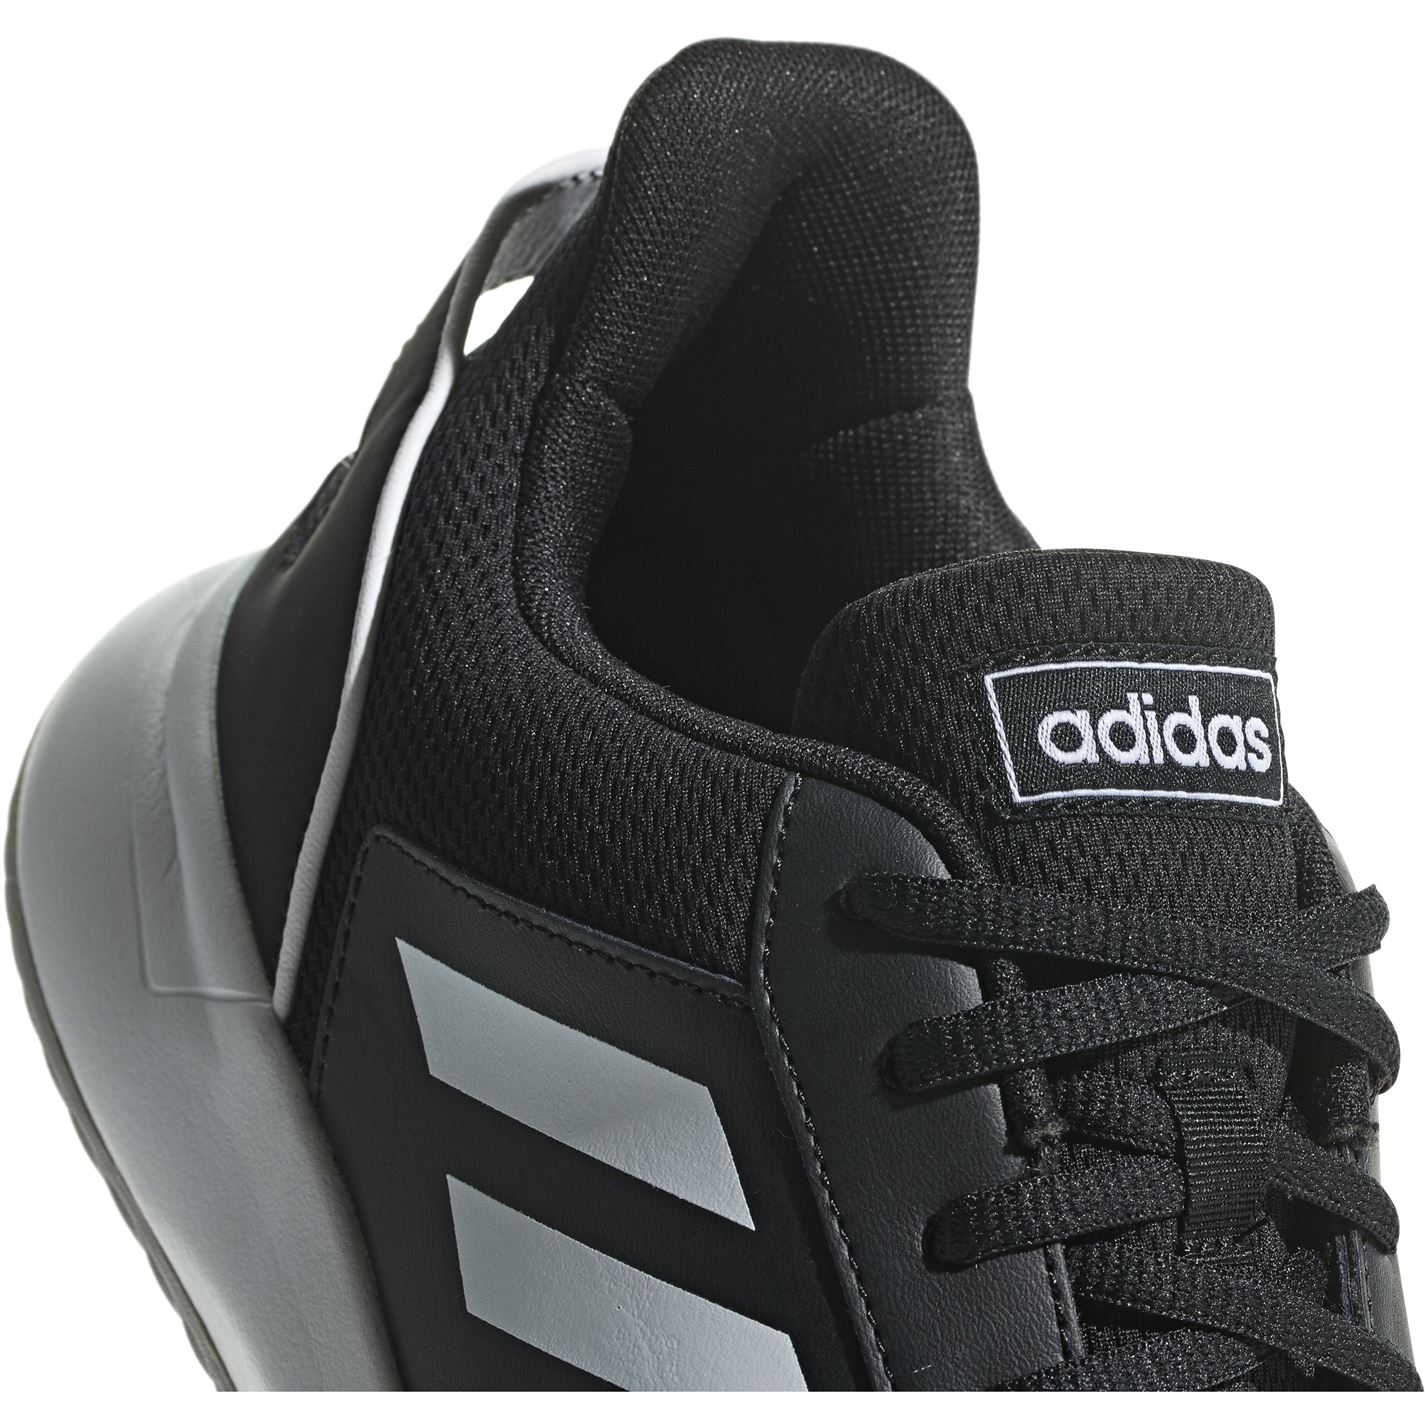 Pantof adidas Courtsmash Classic Tennis barbat